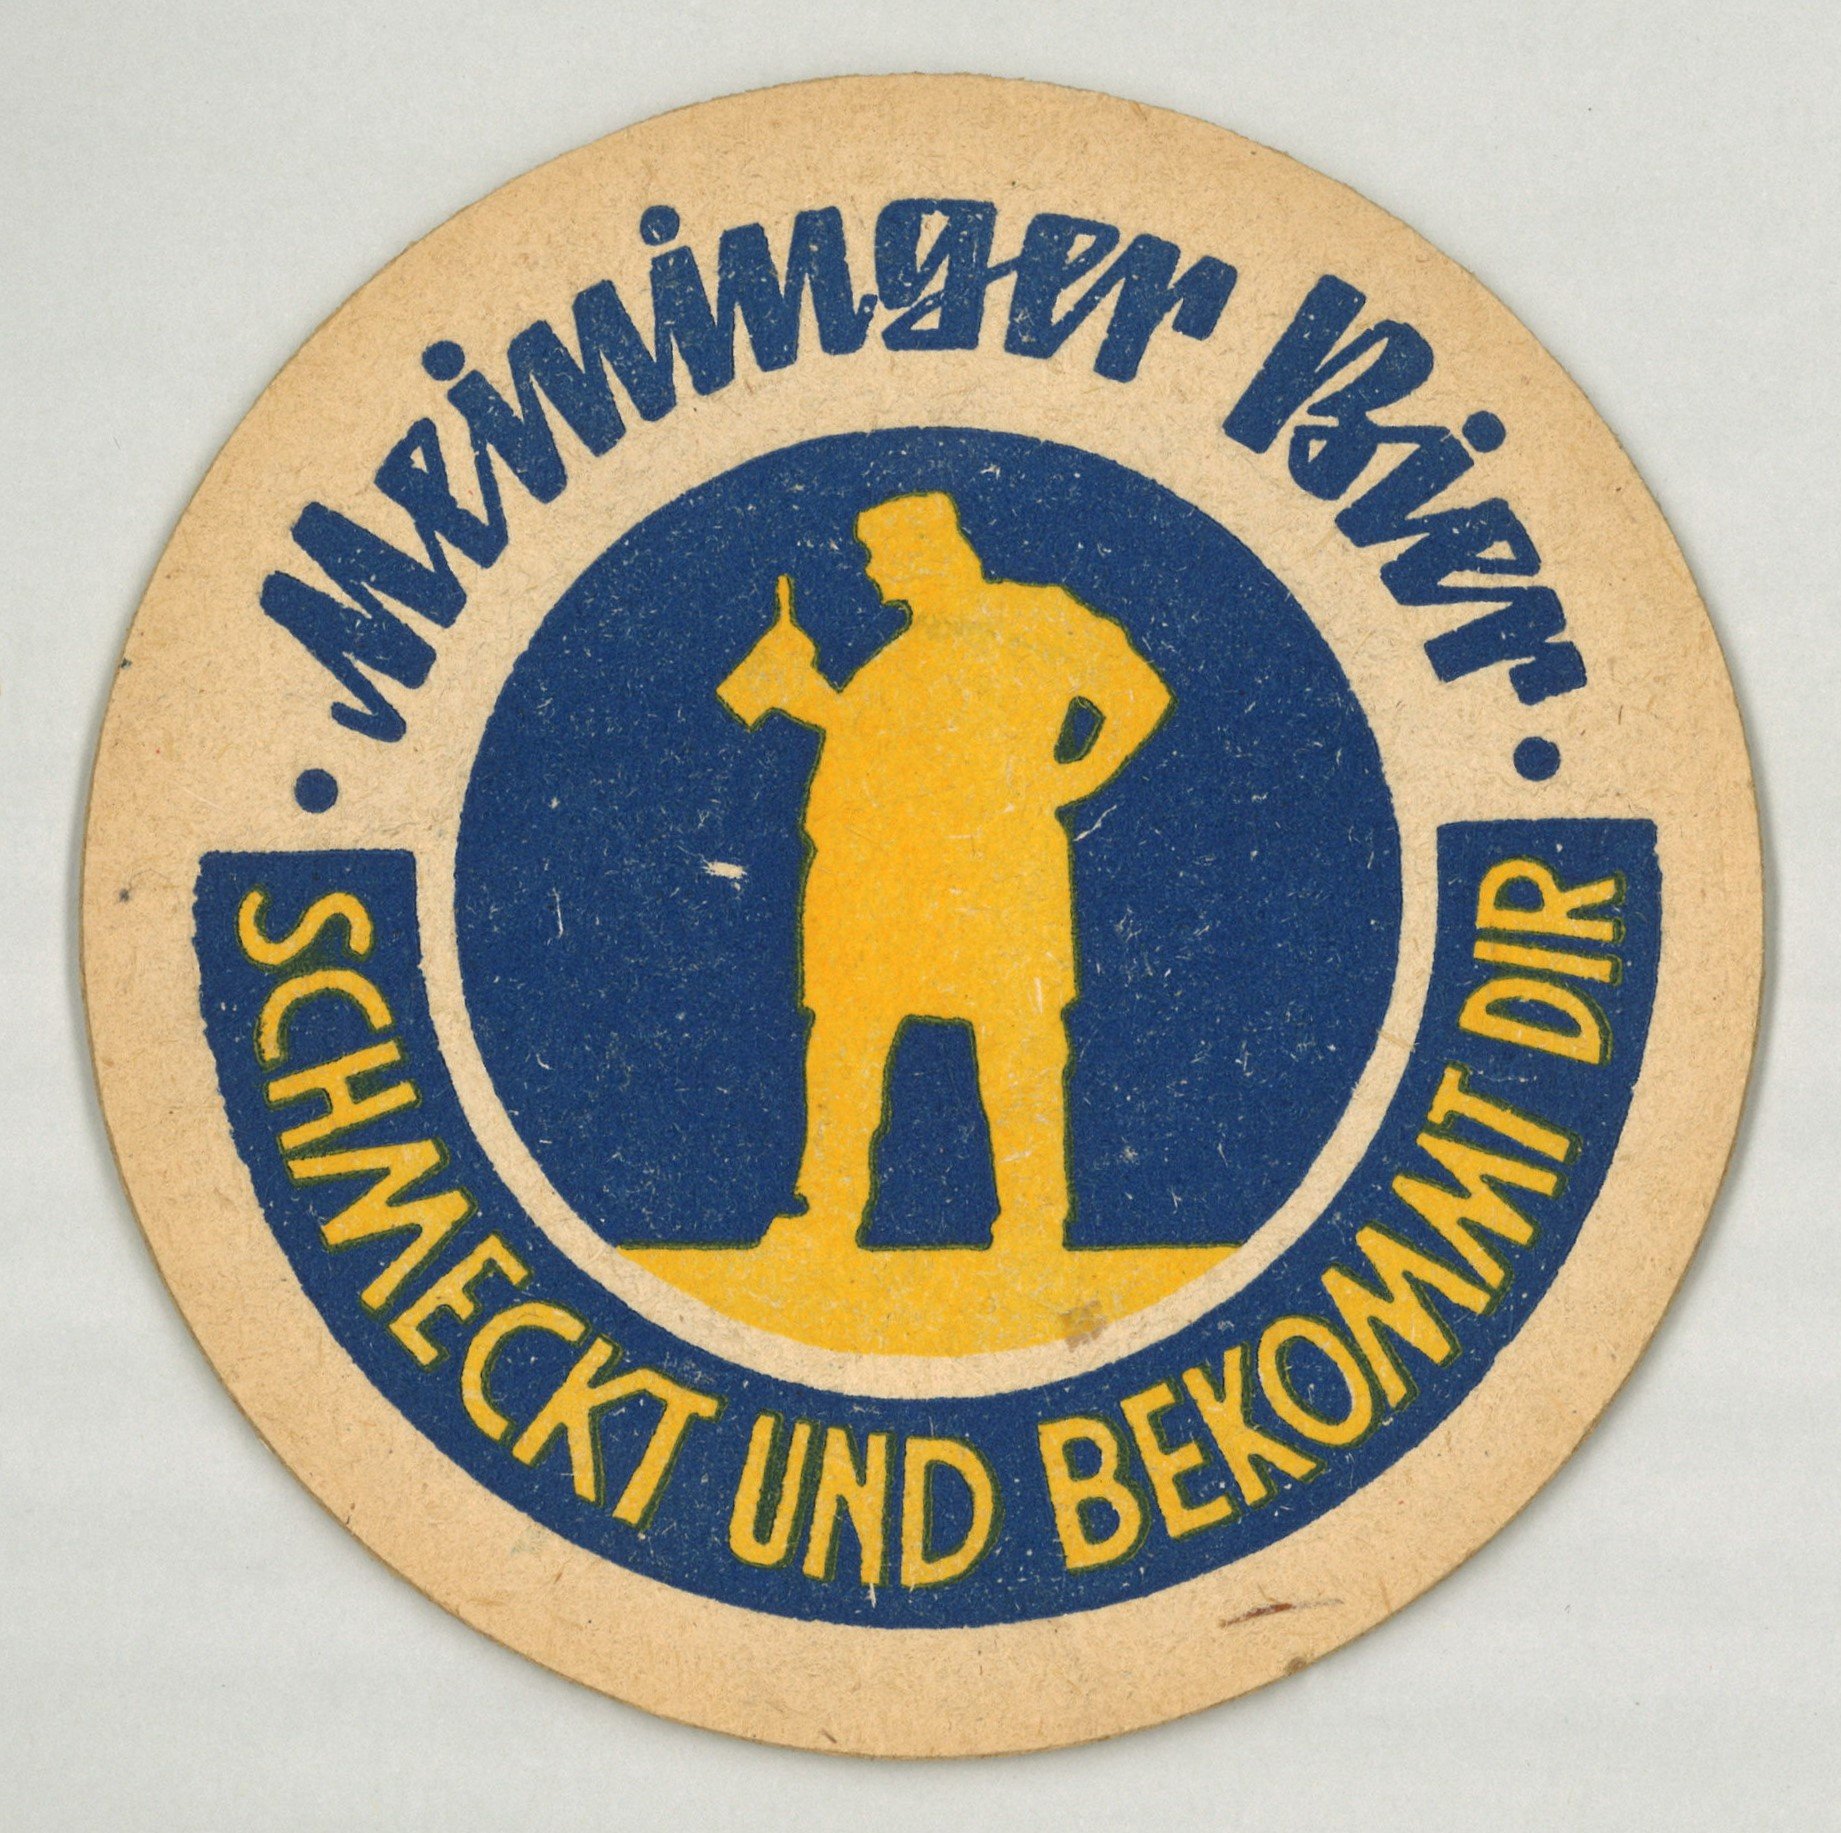 Meiningen: Meininger Bier (Landesgeschichtliche Vereinigung für die Mark Brandenburg e.V., Archiv CC BY)